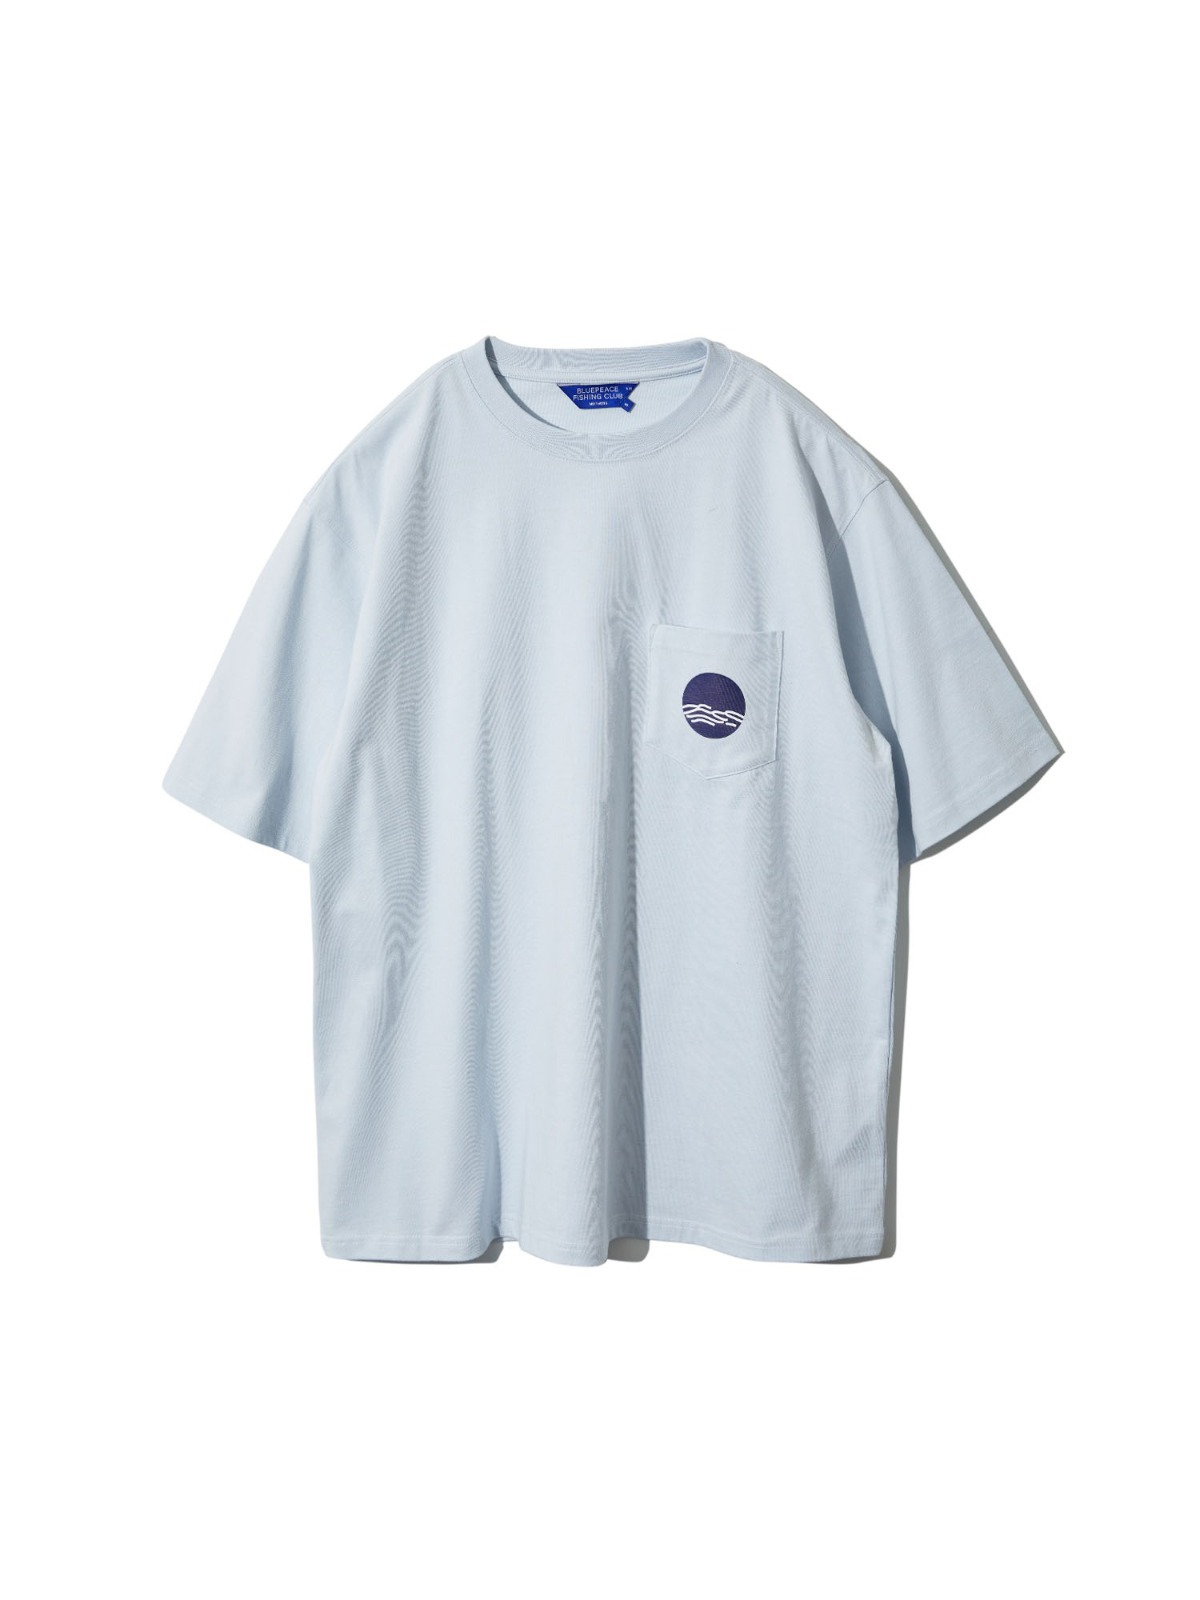 Club Pocket T-Shirt (Sax)